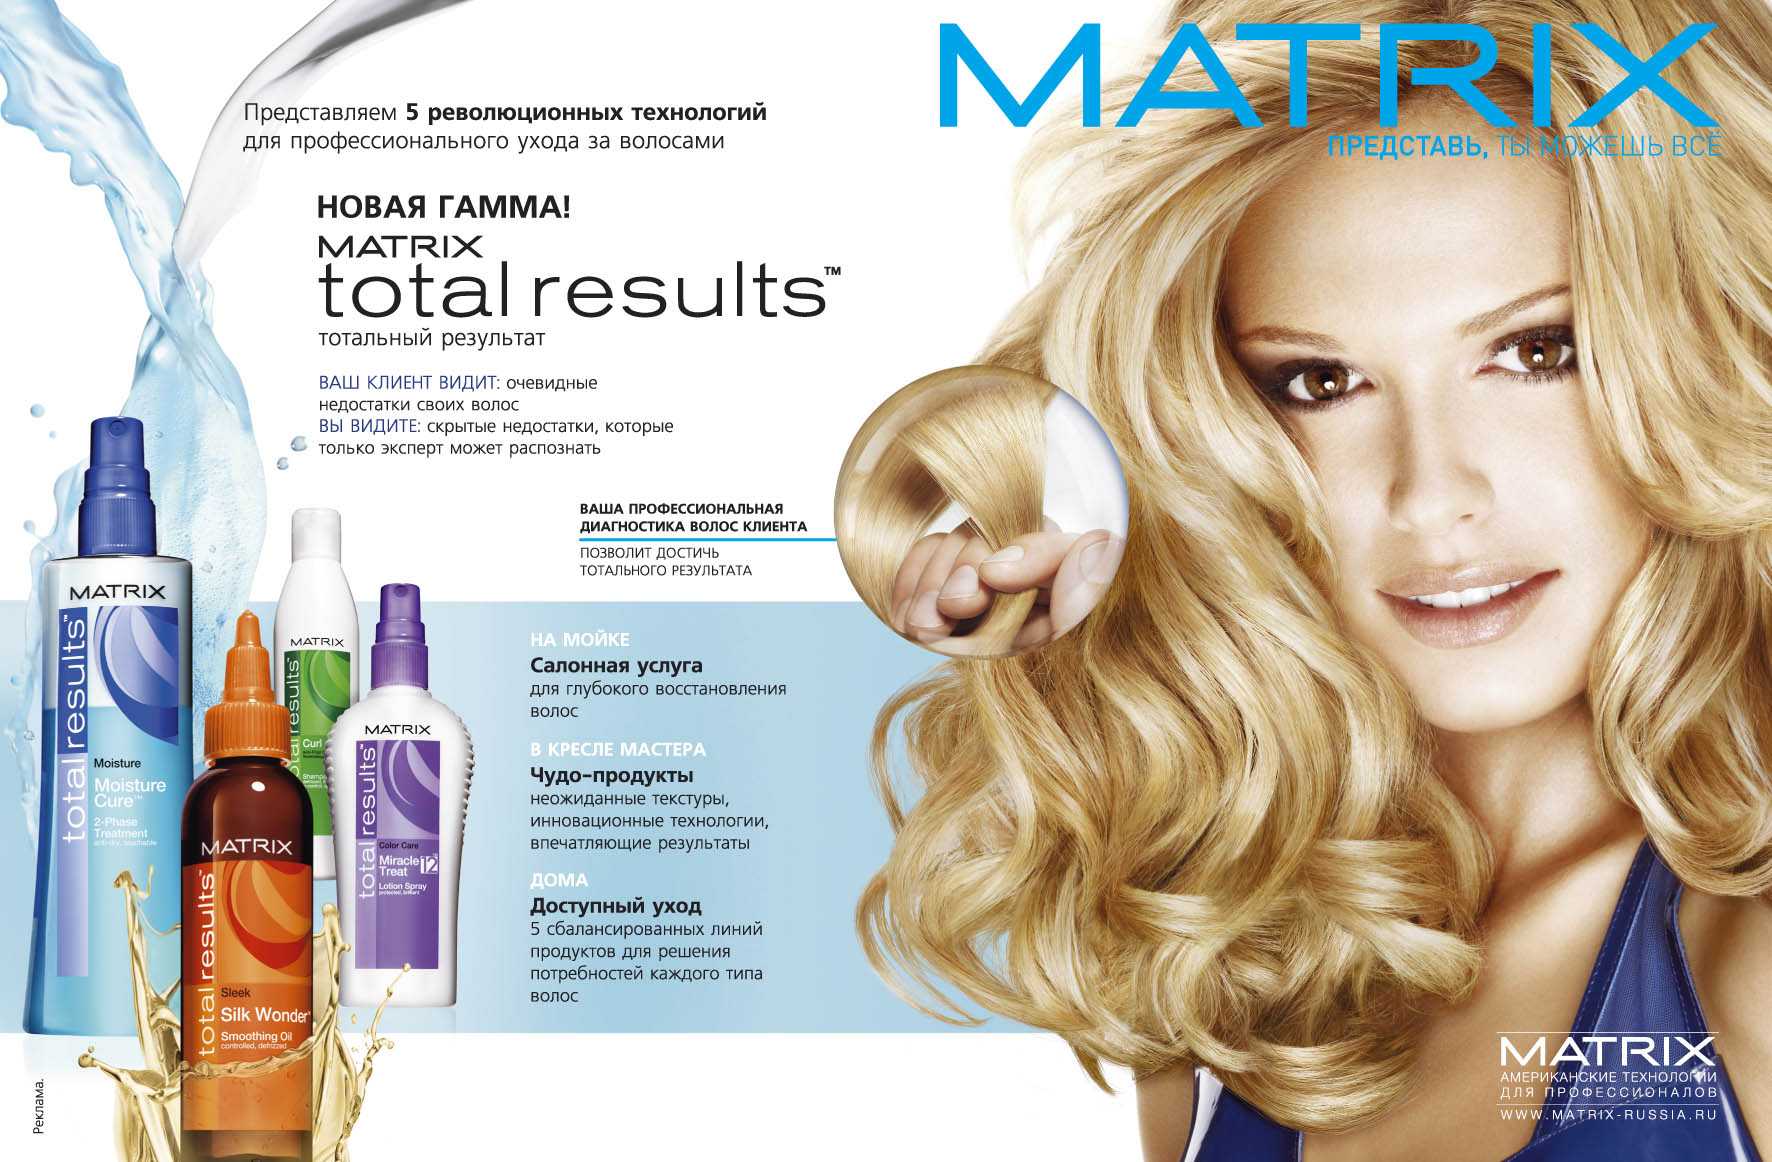 Матрикс уход за волосами (matrix): отзывы, обзор программ для восстановления, цены, состав, инструкция по применению средств, результаты, плюсы и минусы